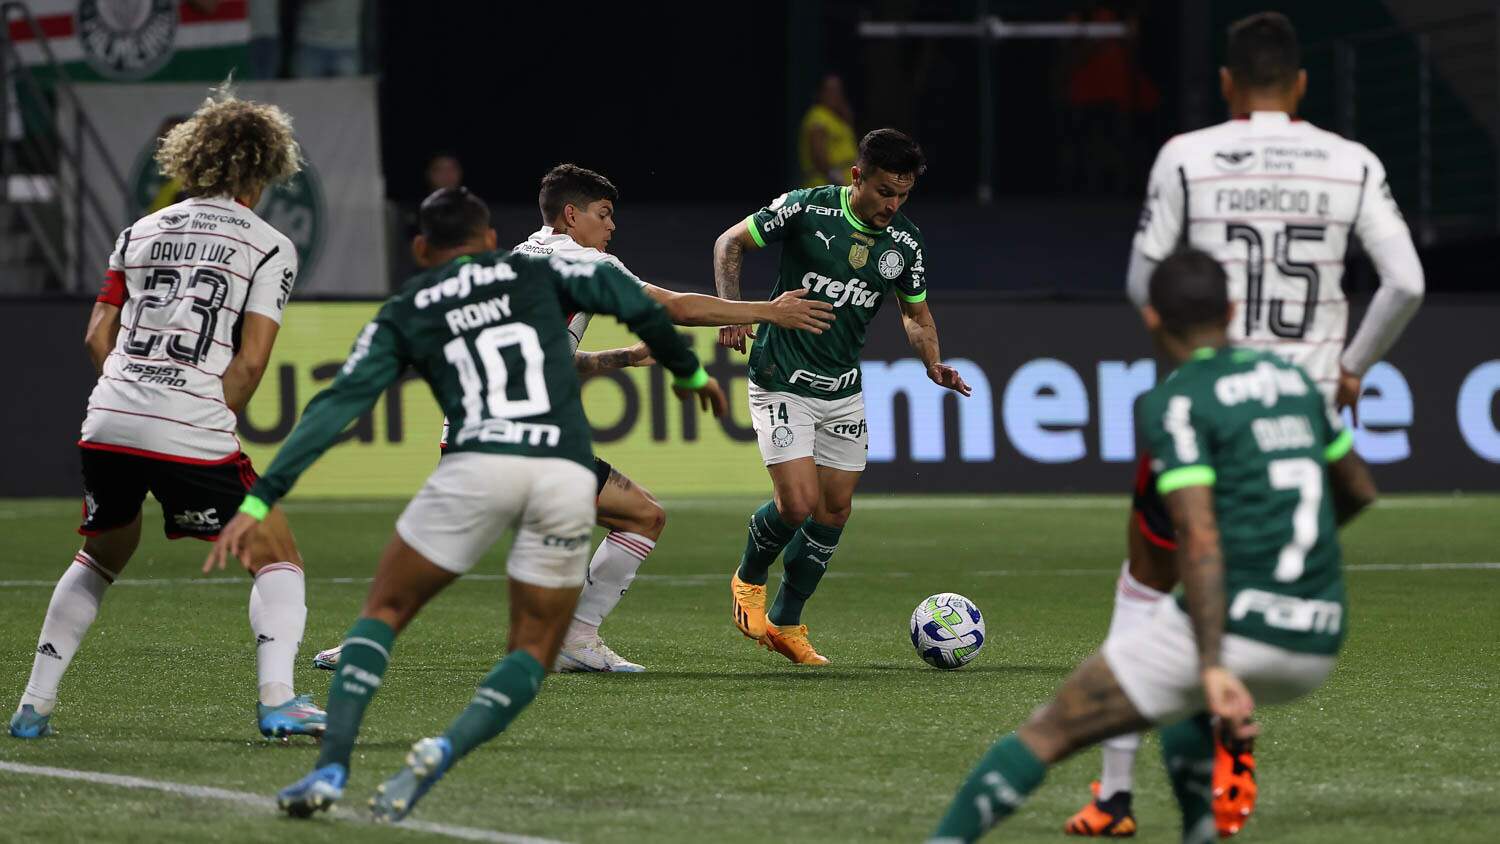 Campeonato Brasileiro Série A tem cinco jogos para abrir 16ª rodada -  Esportes - Campo Grande News